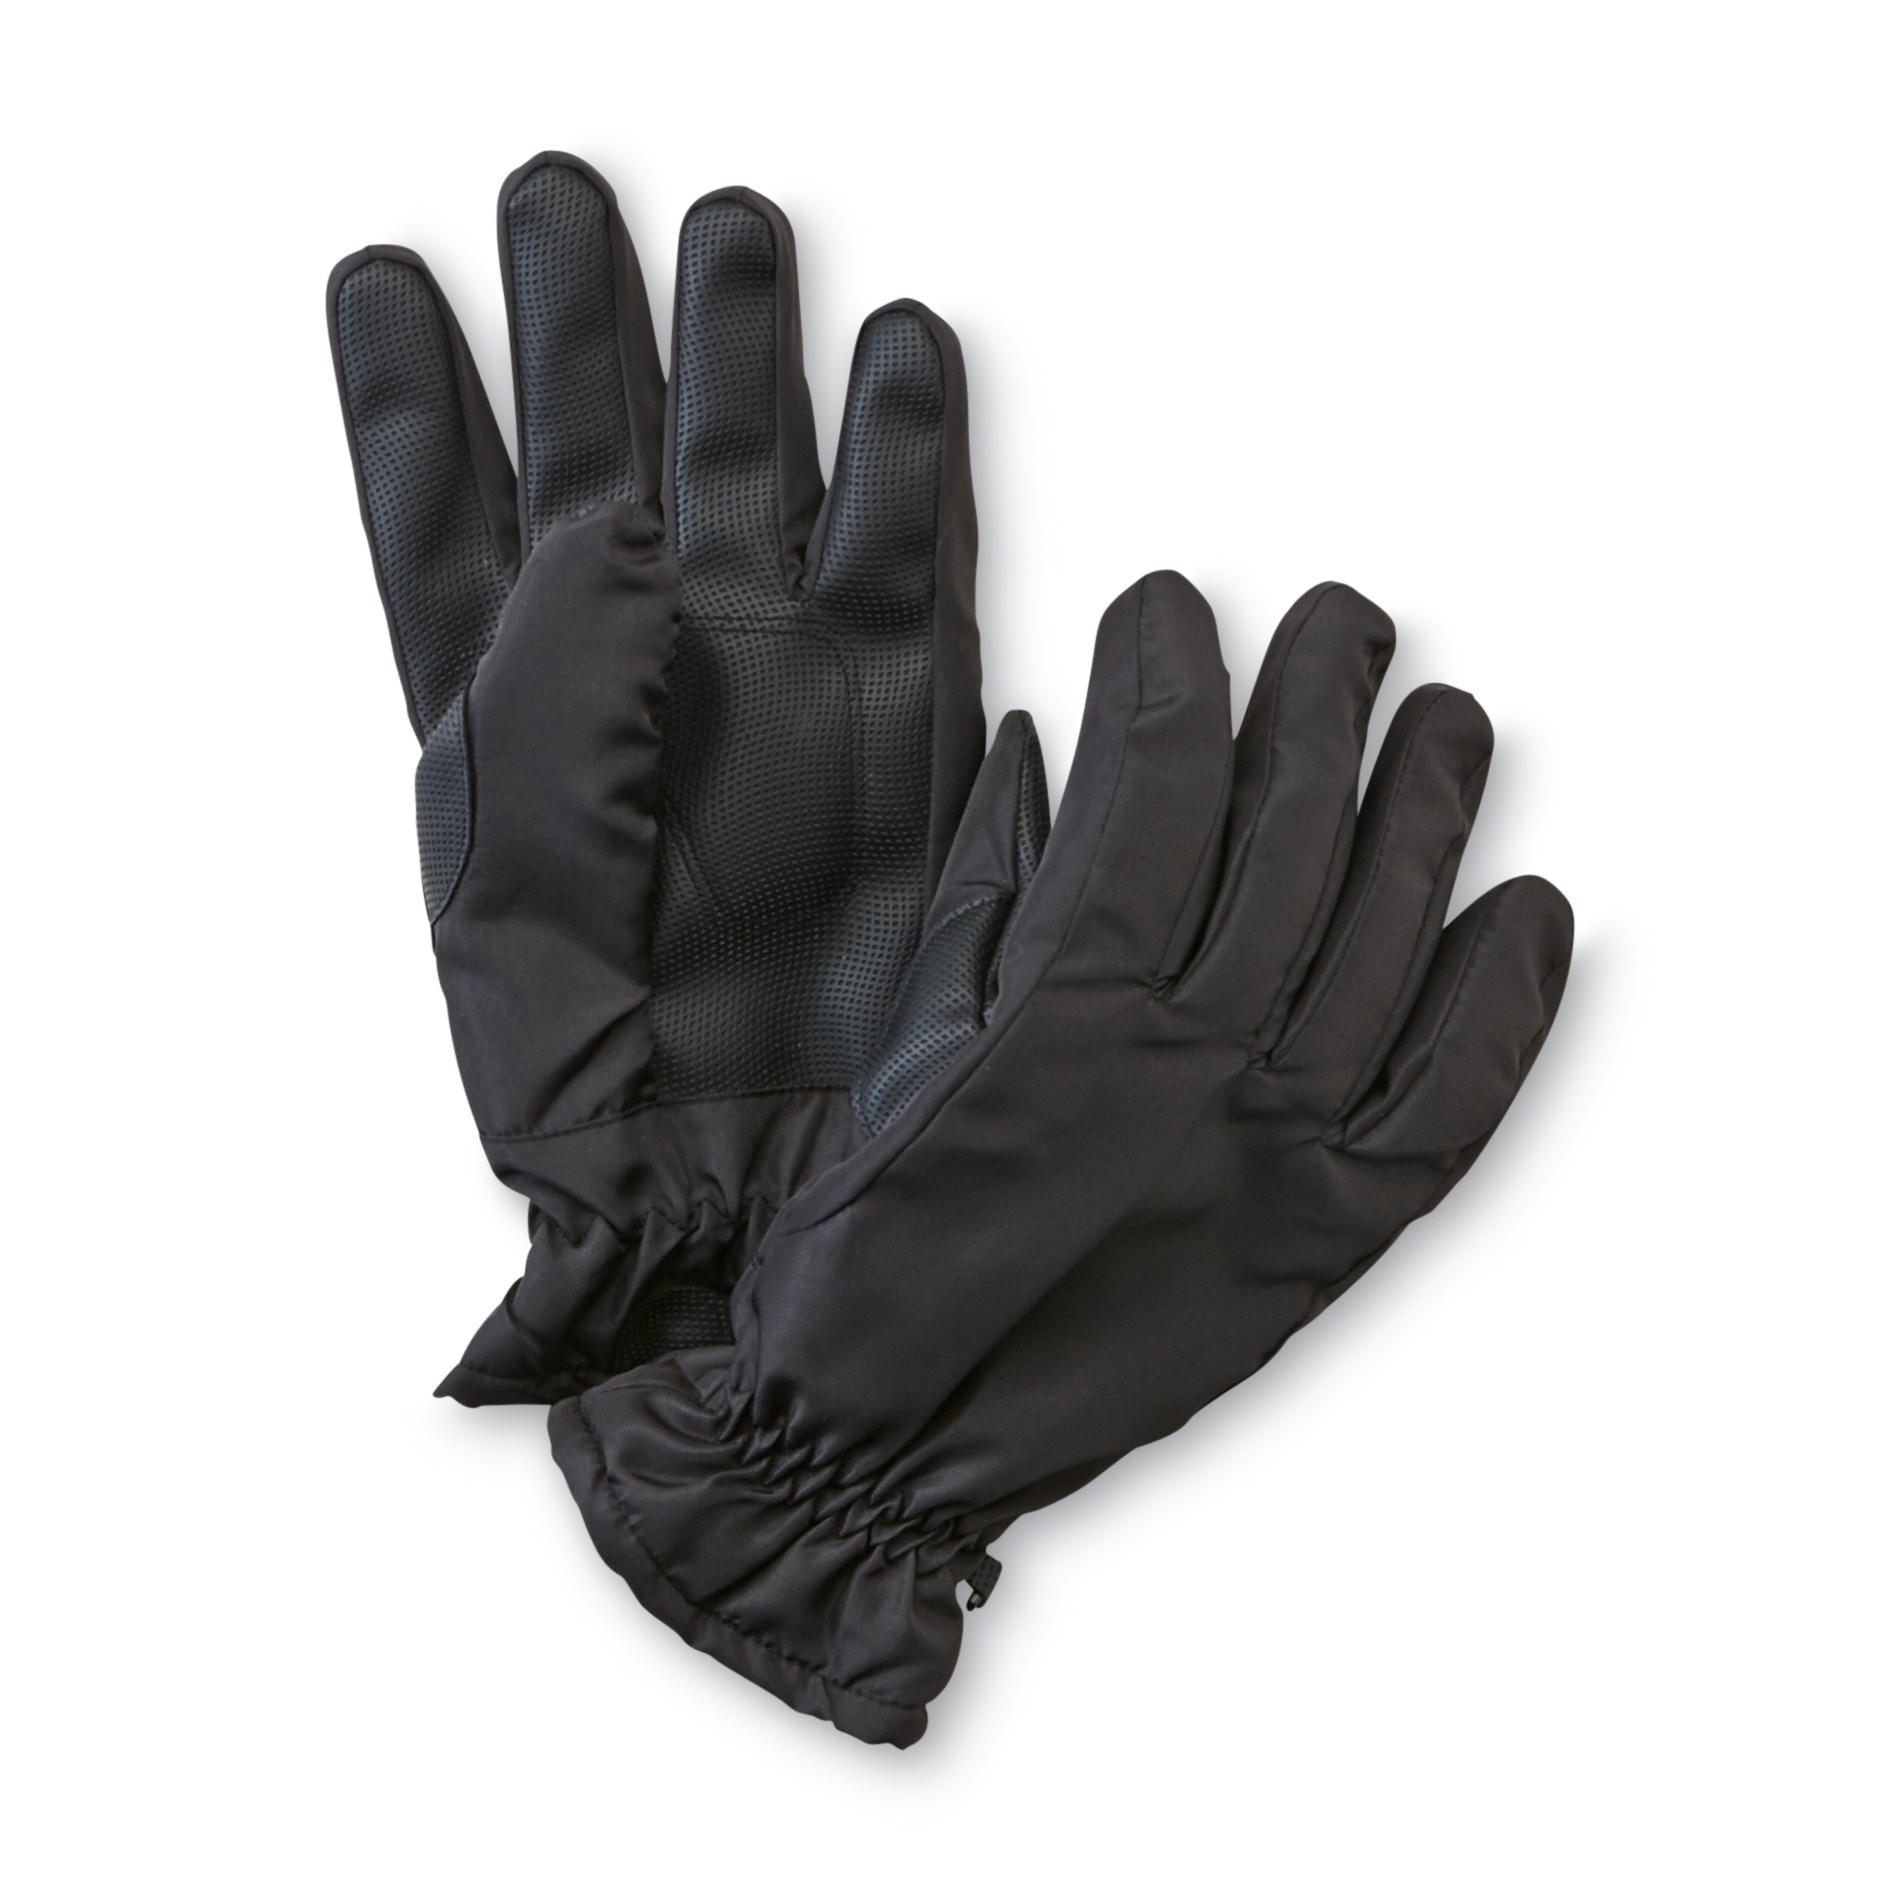 NordicTrack Men's Microfleece-Lined Gloves